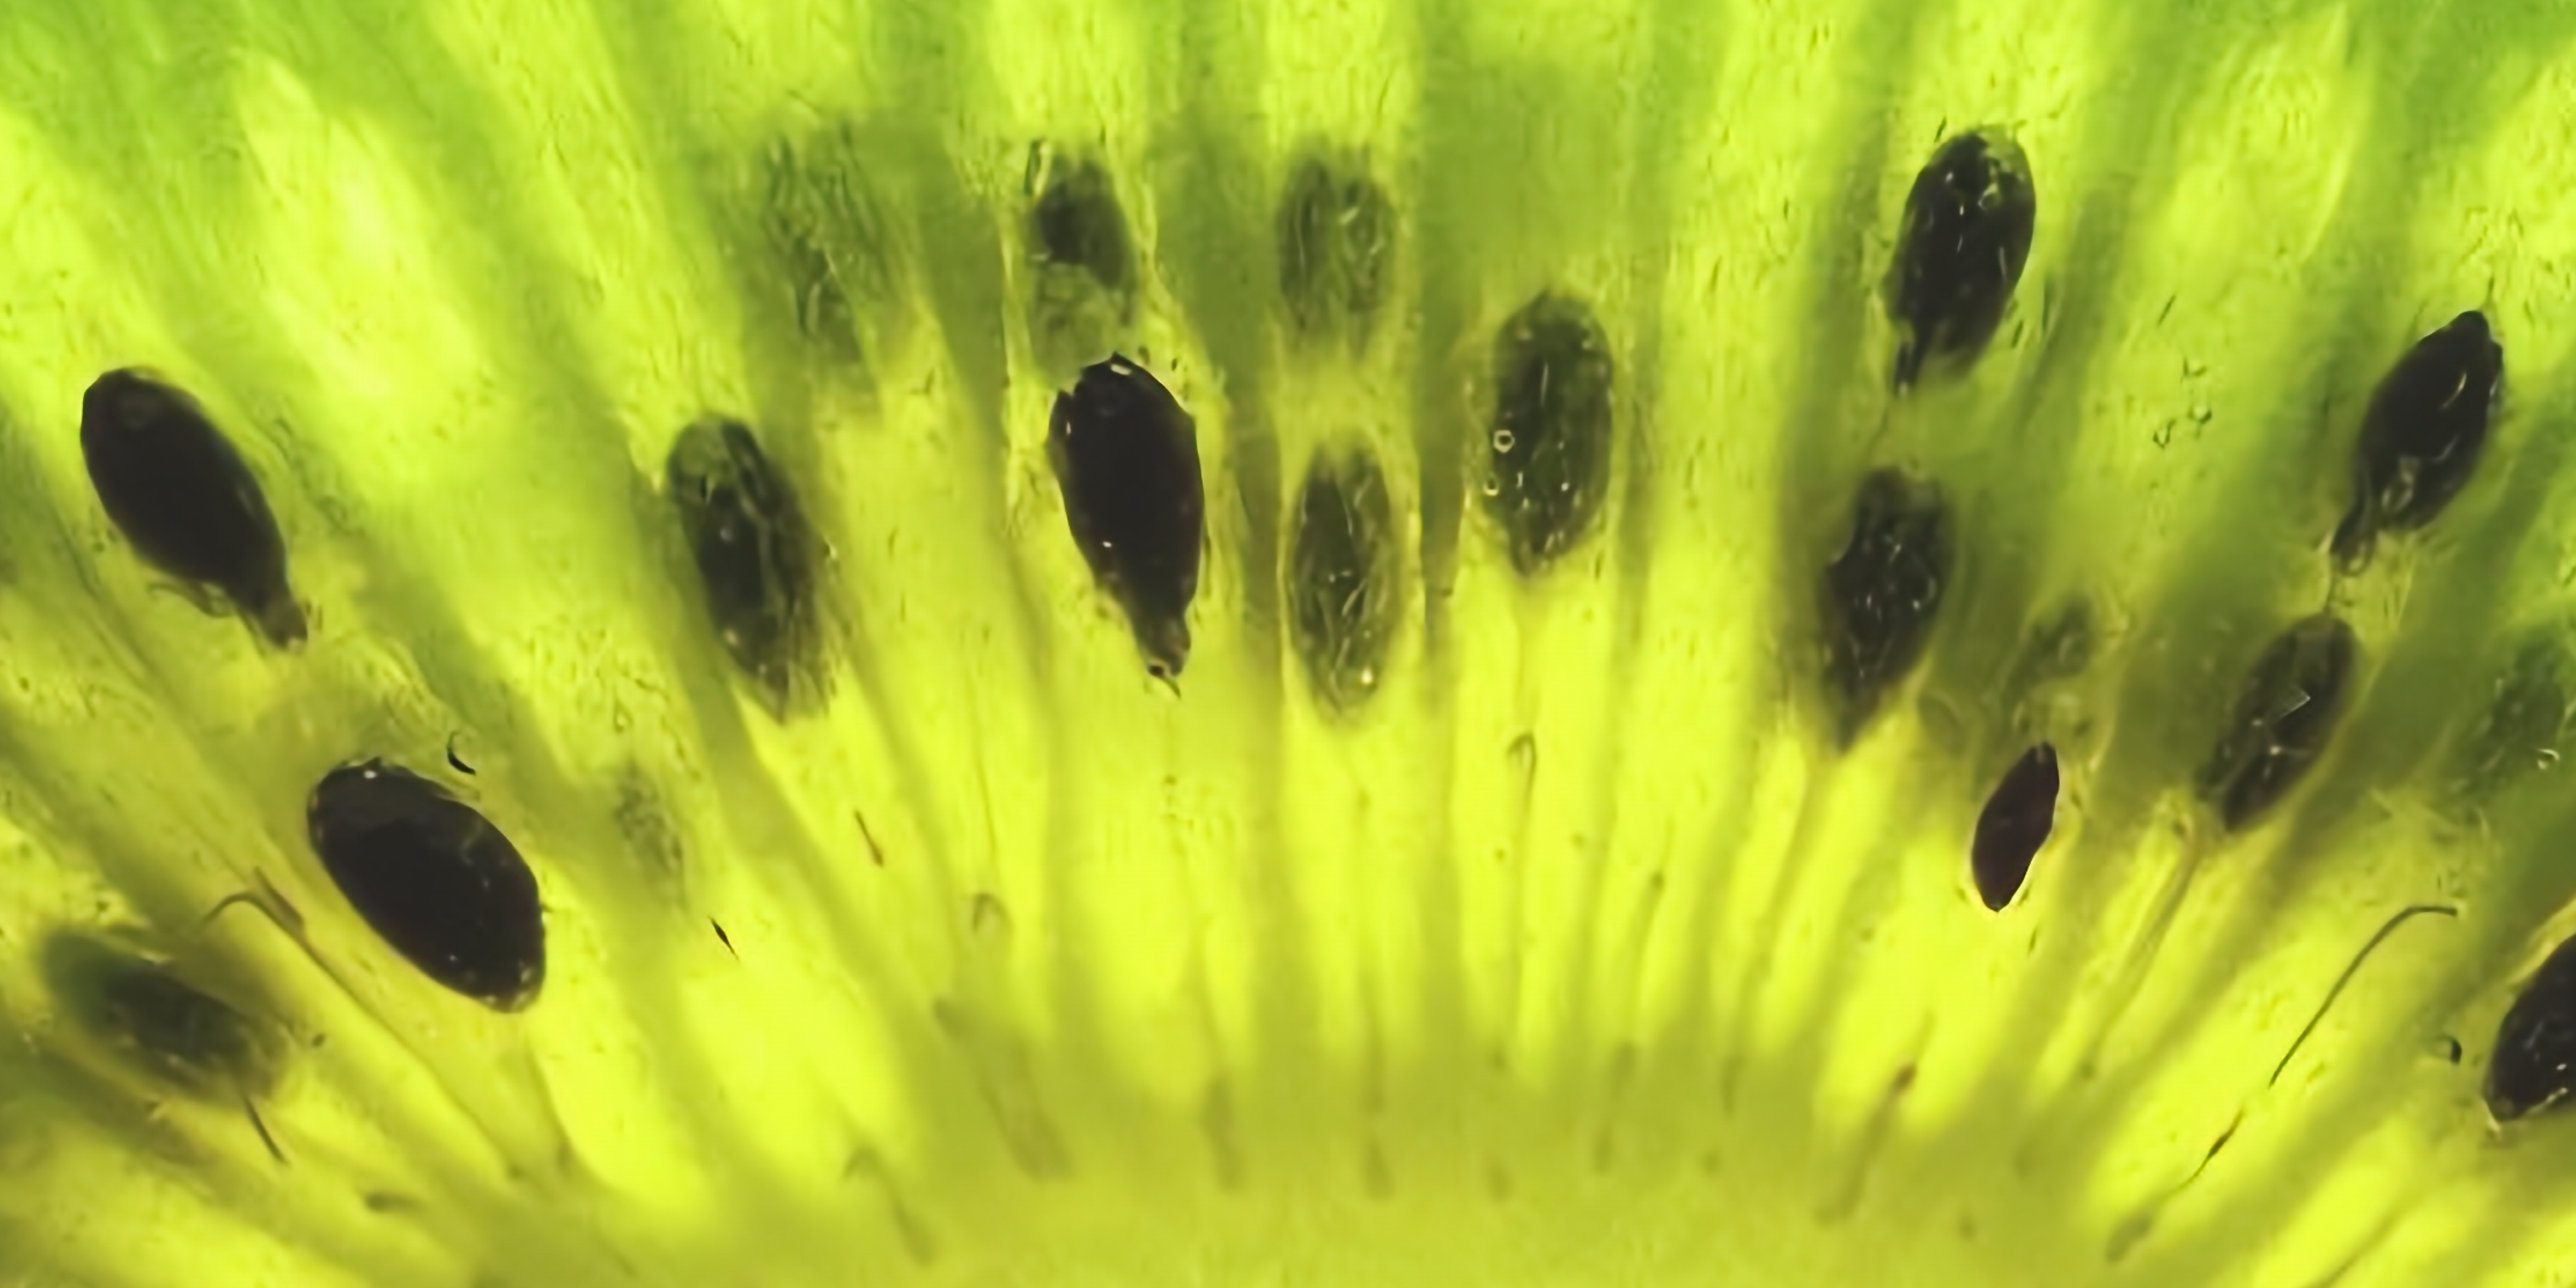 Macro view of a kiwi fruit